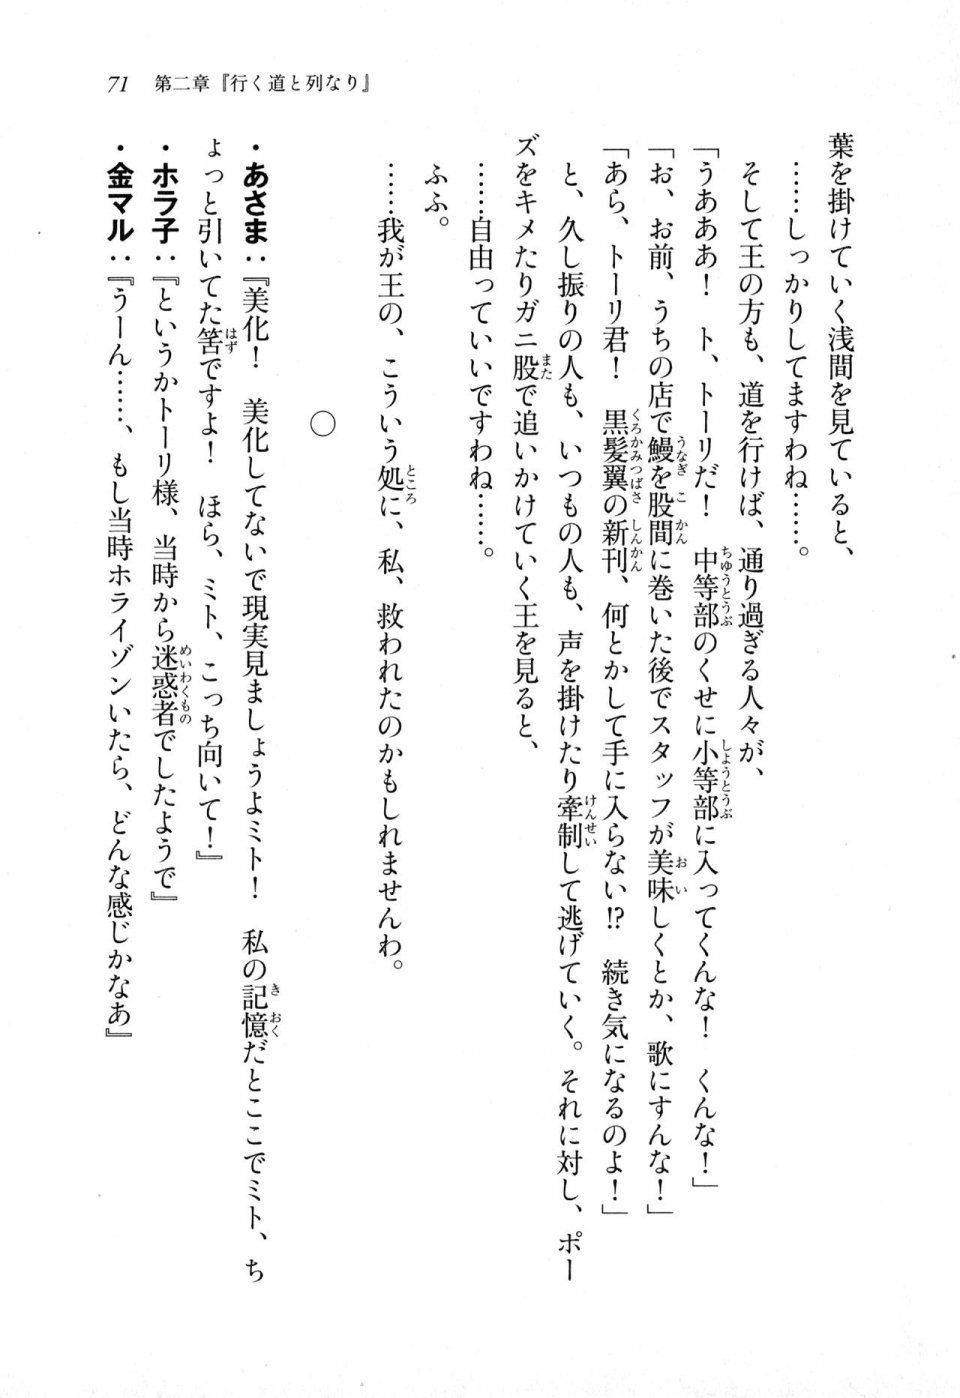 Kyoukai Senjou no Horizon LN Sidestory Vol 1 - Photo #69